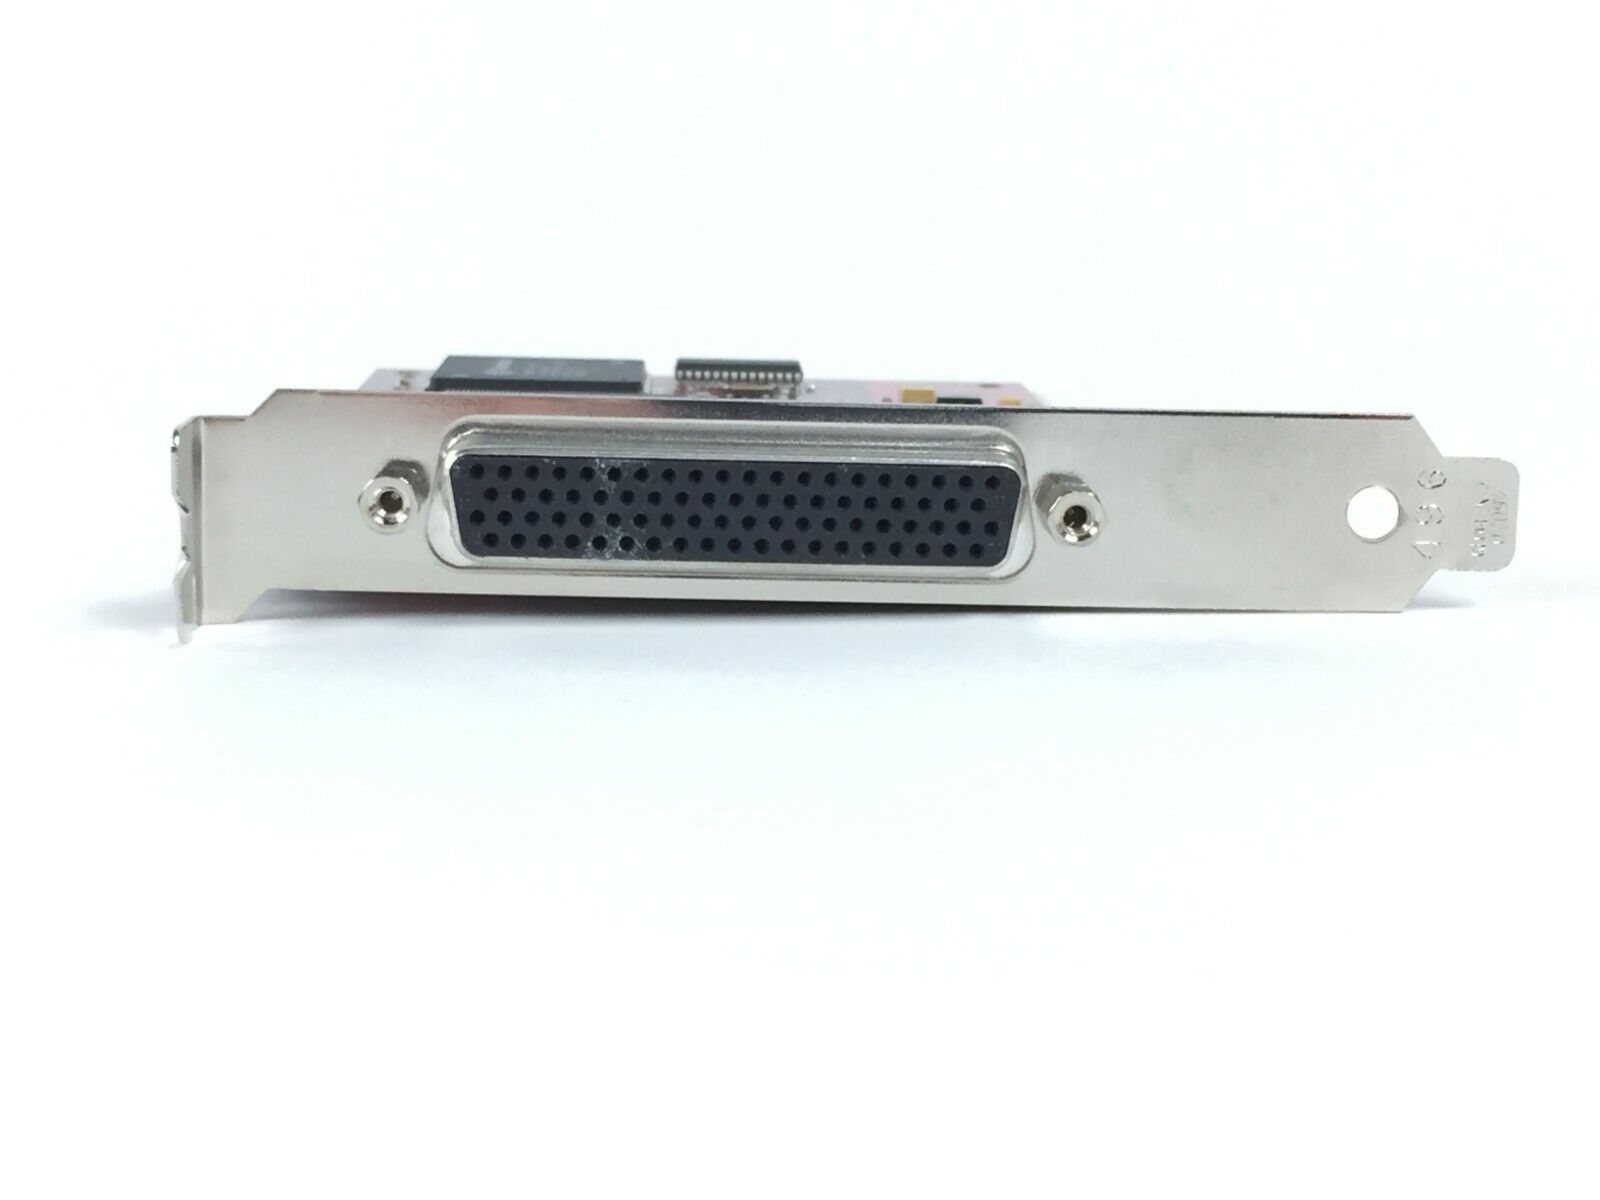 Comtrol 5002210 RocketPort UPCI+ Quad/Octa 422 ROHS PCI Adapter Serial Card